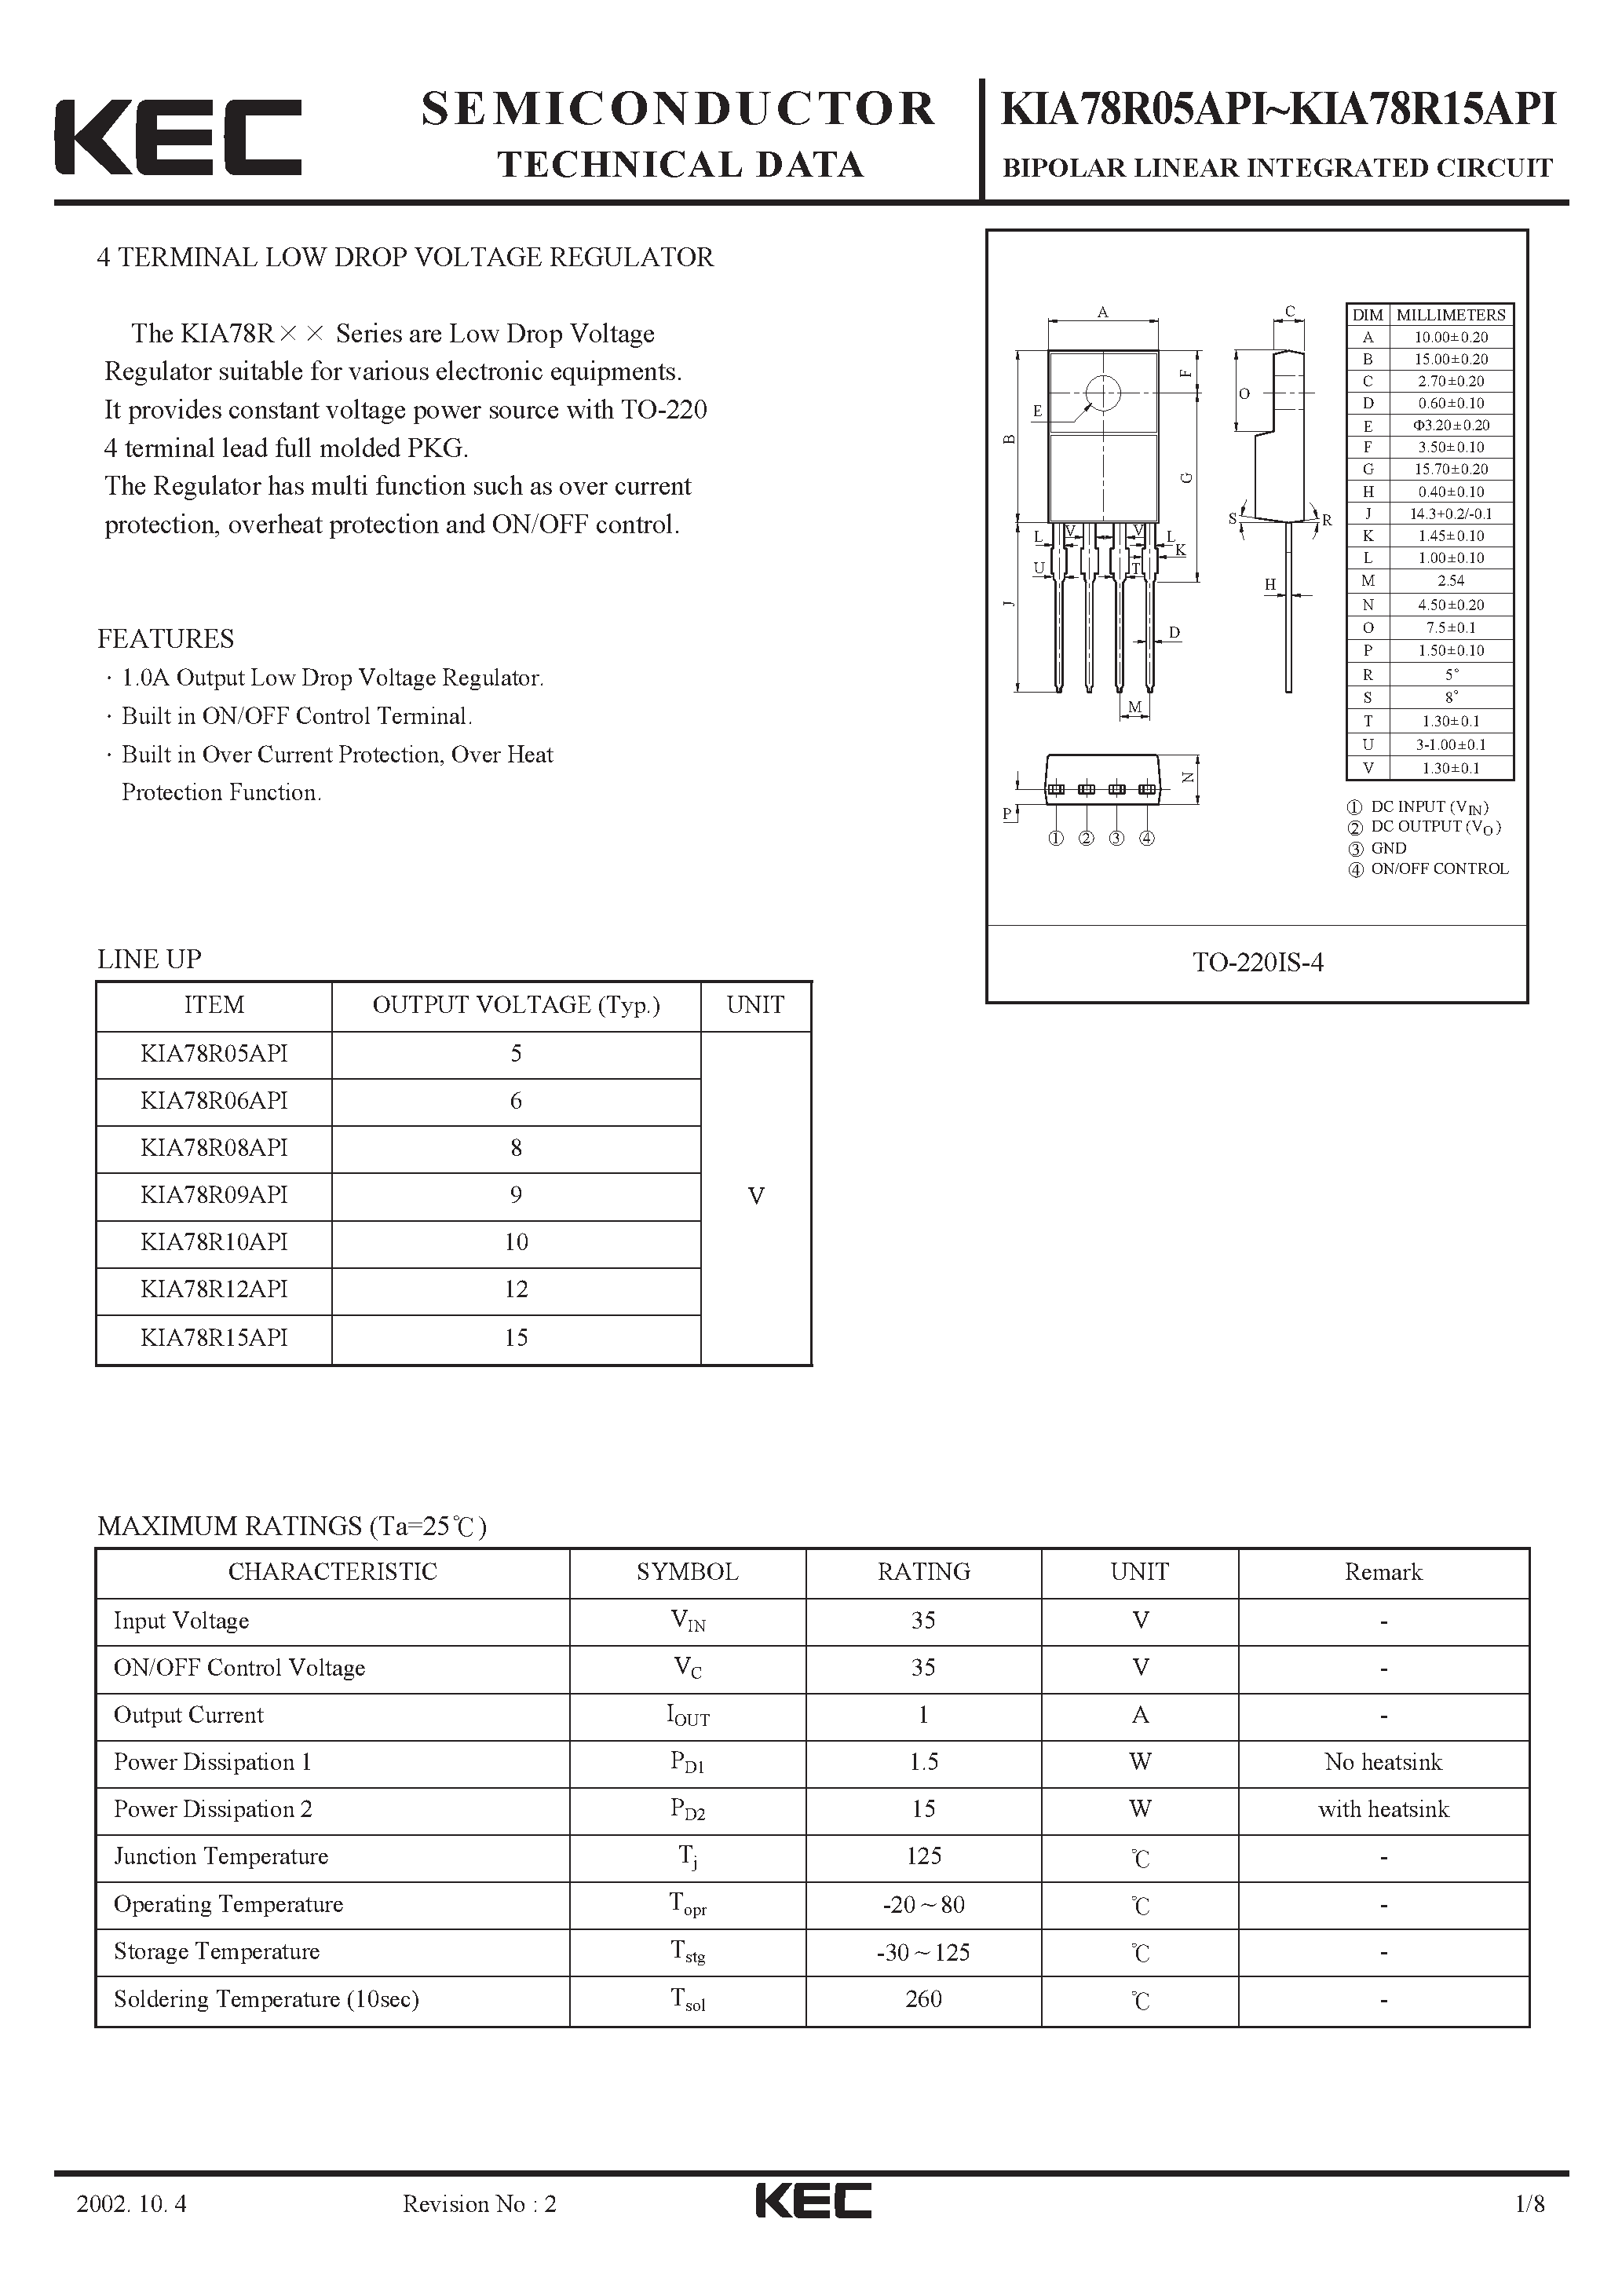 Datasheet KIA78R05API - BIPOLAR LINEAR INTEGRATED CIRCUIT (4 TERMINAL LOW DROP VOLTAGE REGULATOR) page 1